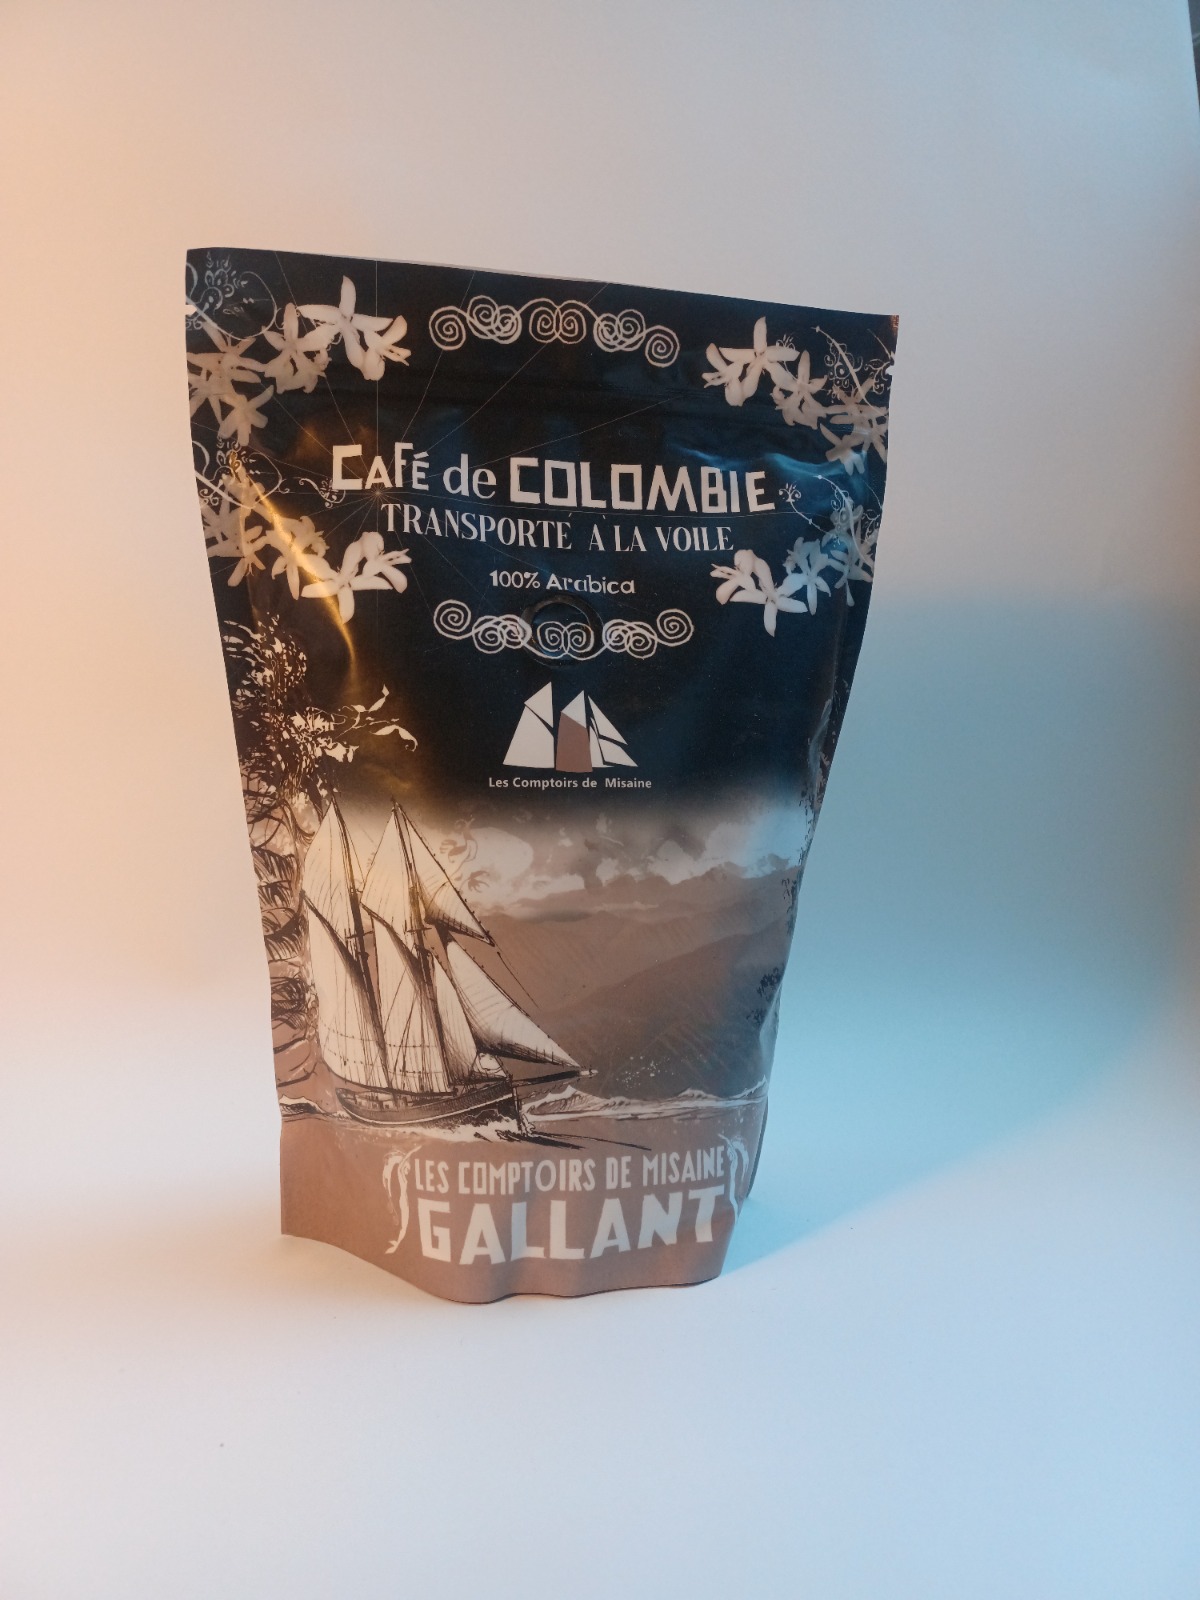 Sac de café de Colombie transportés par la BSC